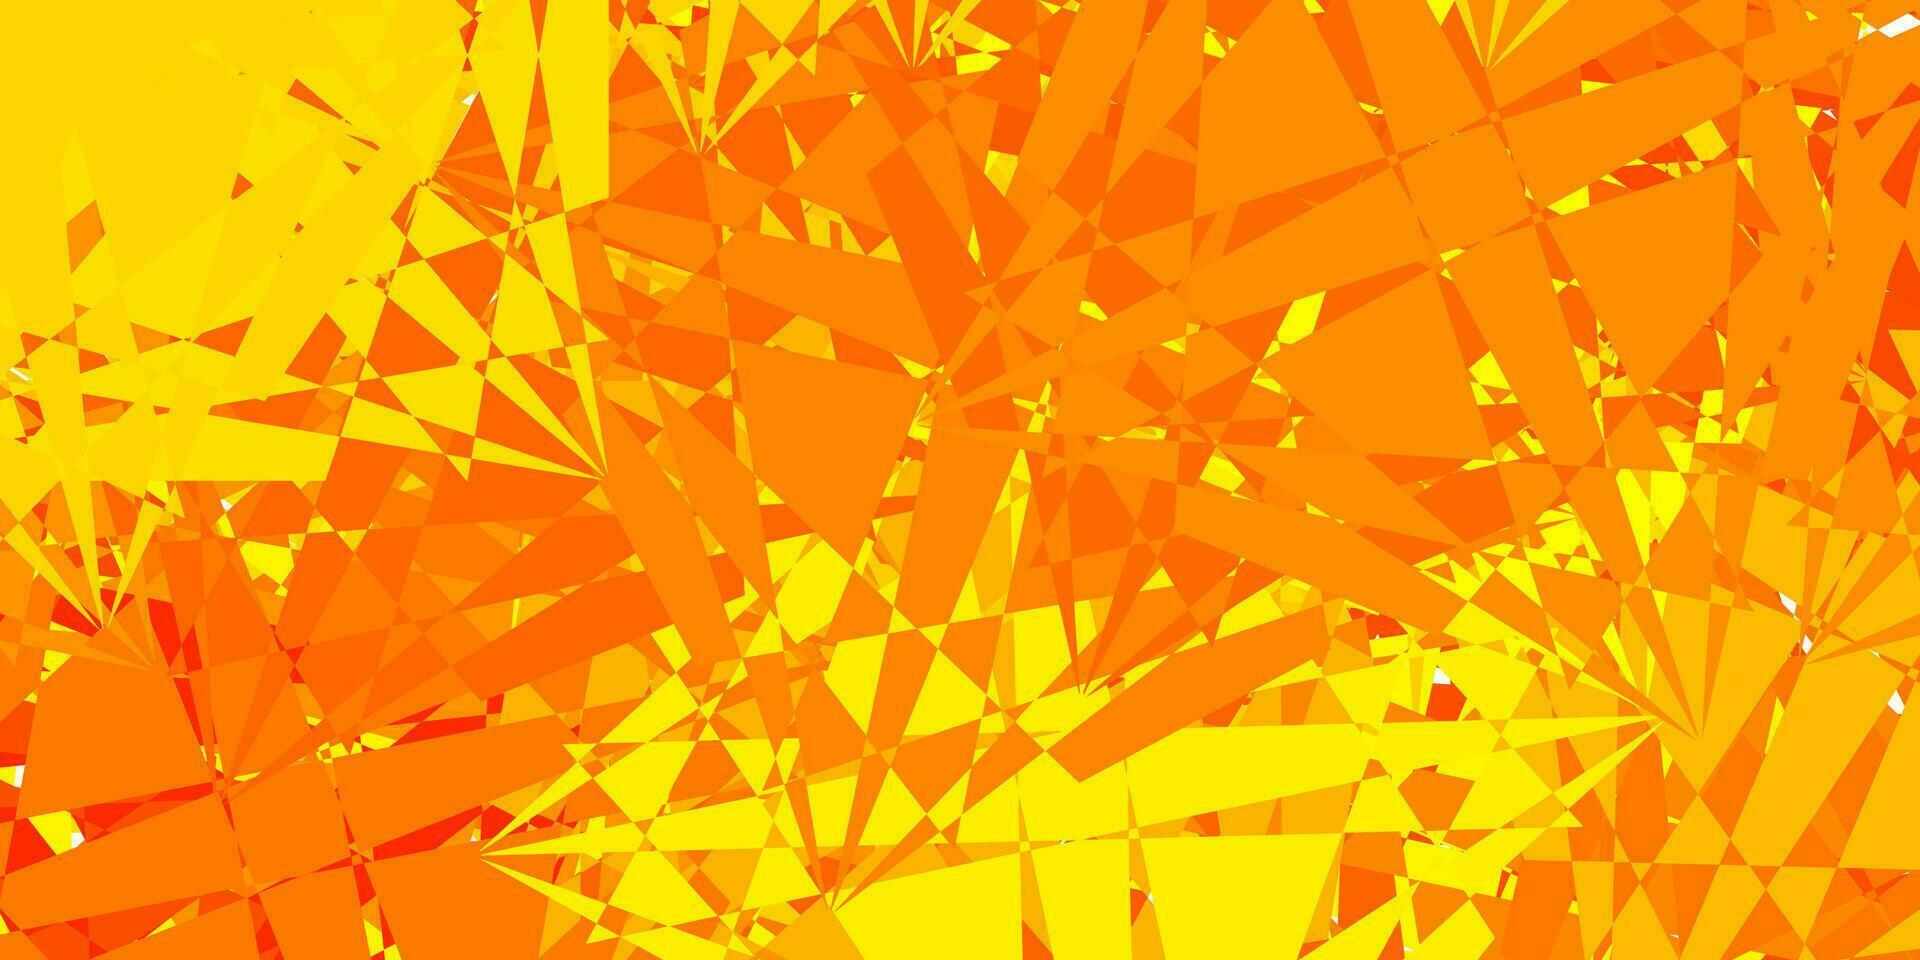 sfondo vettoriale arancione chiaro con triangoli, linee.